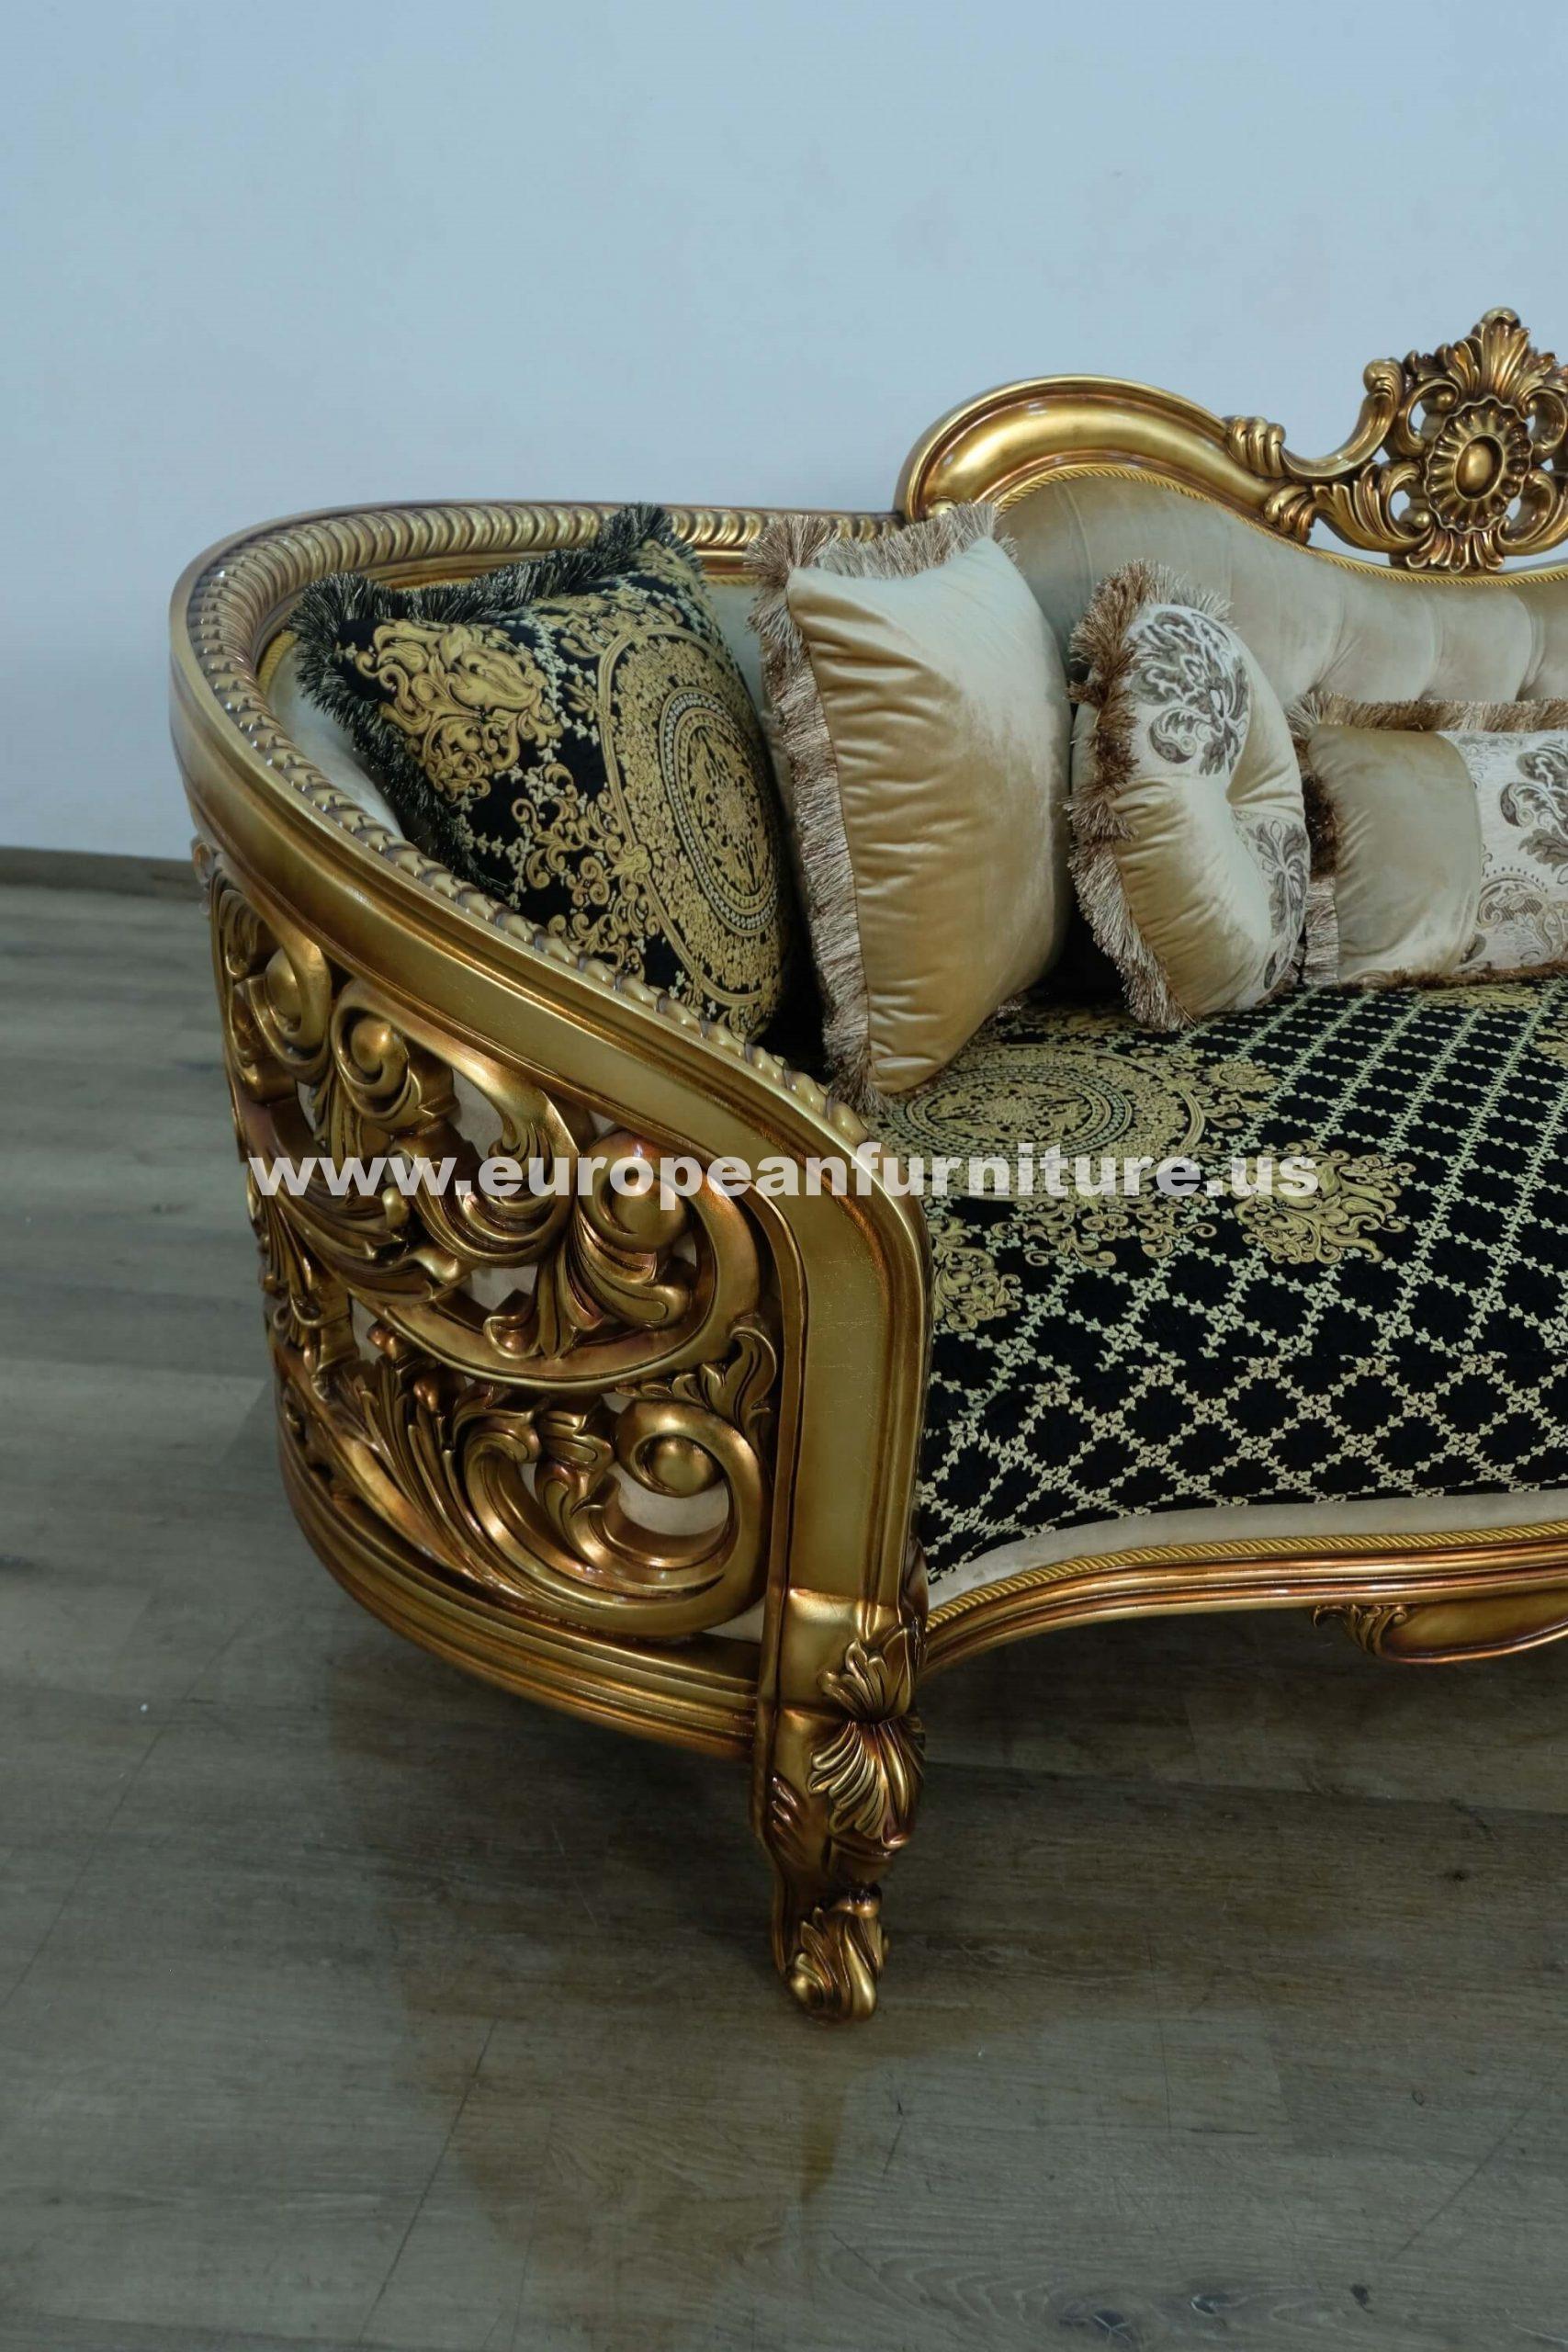 

                    
EUROPEAN FURNITURE BELLAGIO Sofa Set Antique/Bronze/Black Fabric Purchase 
